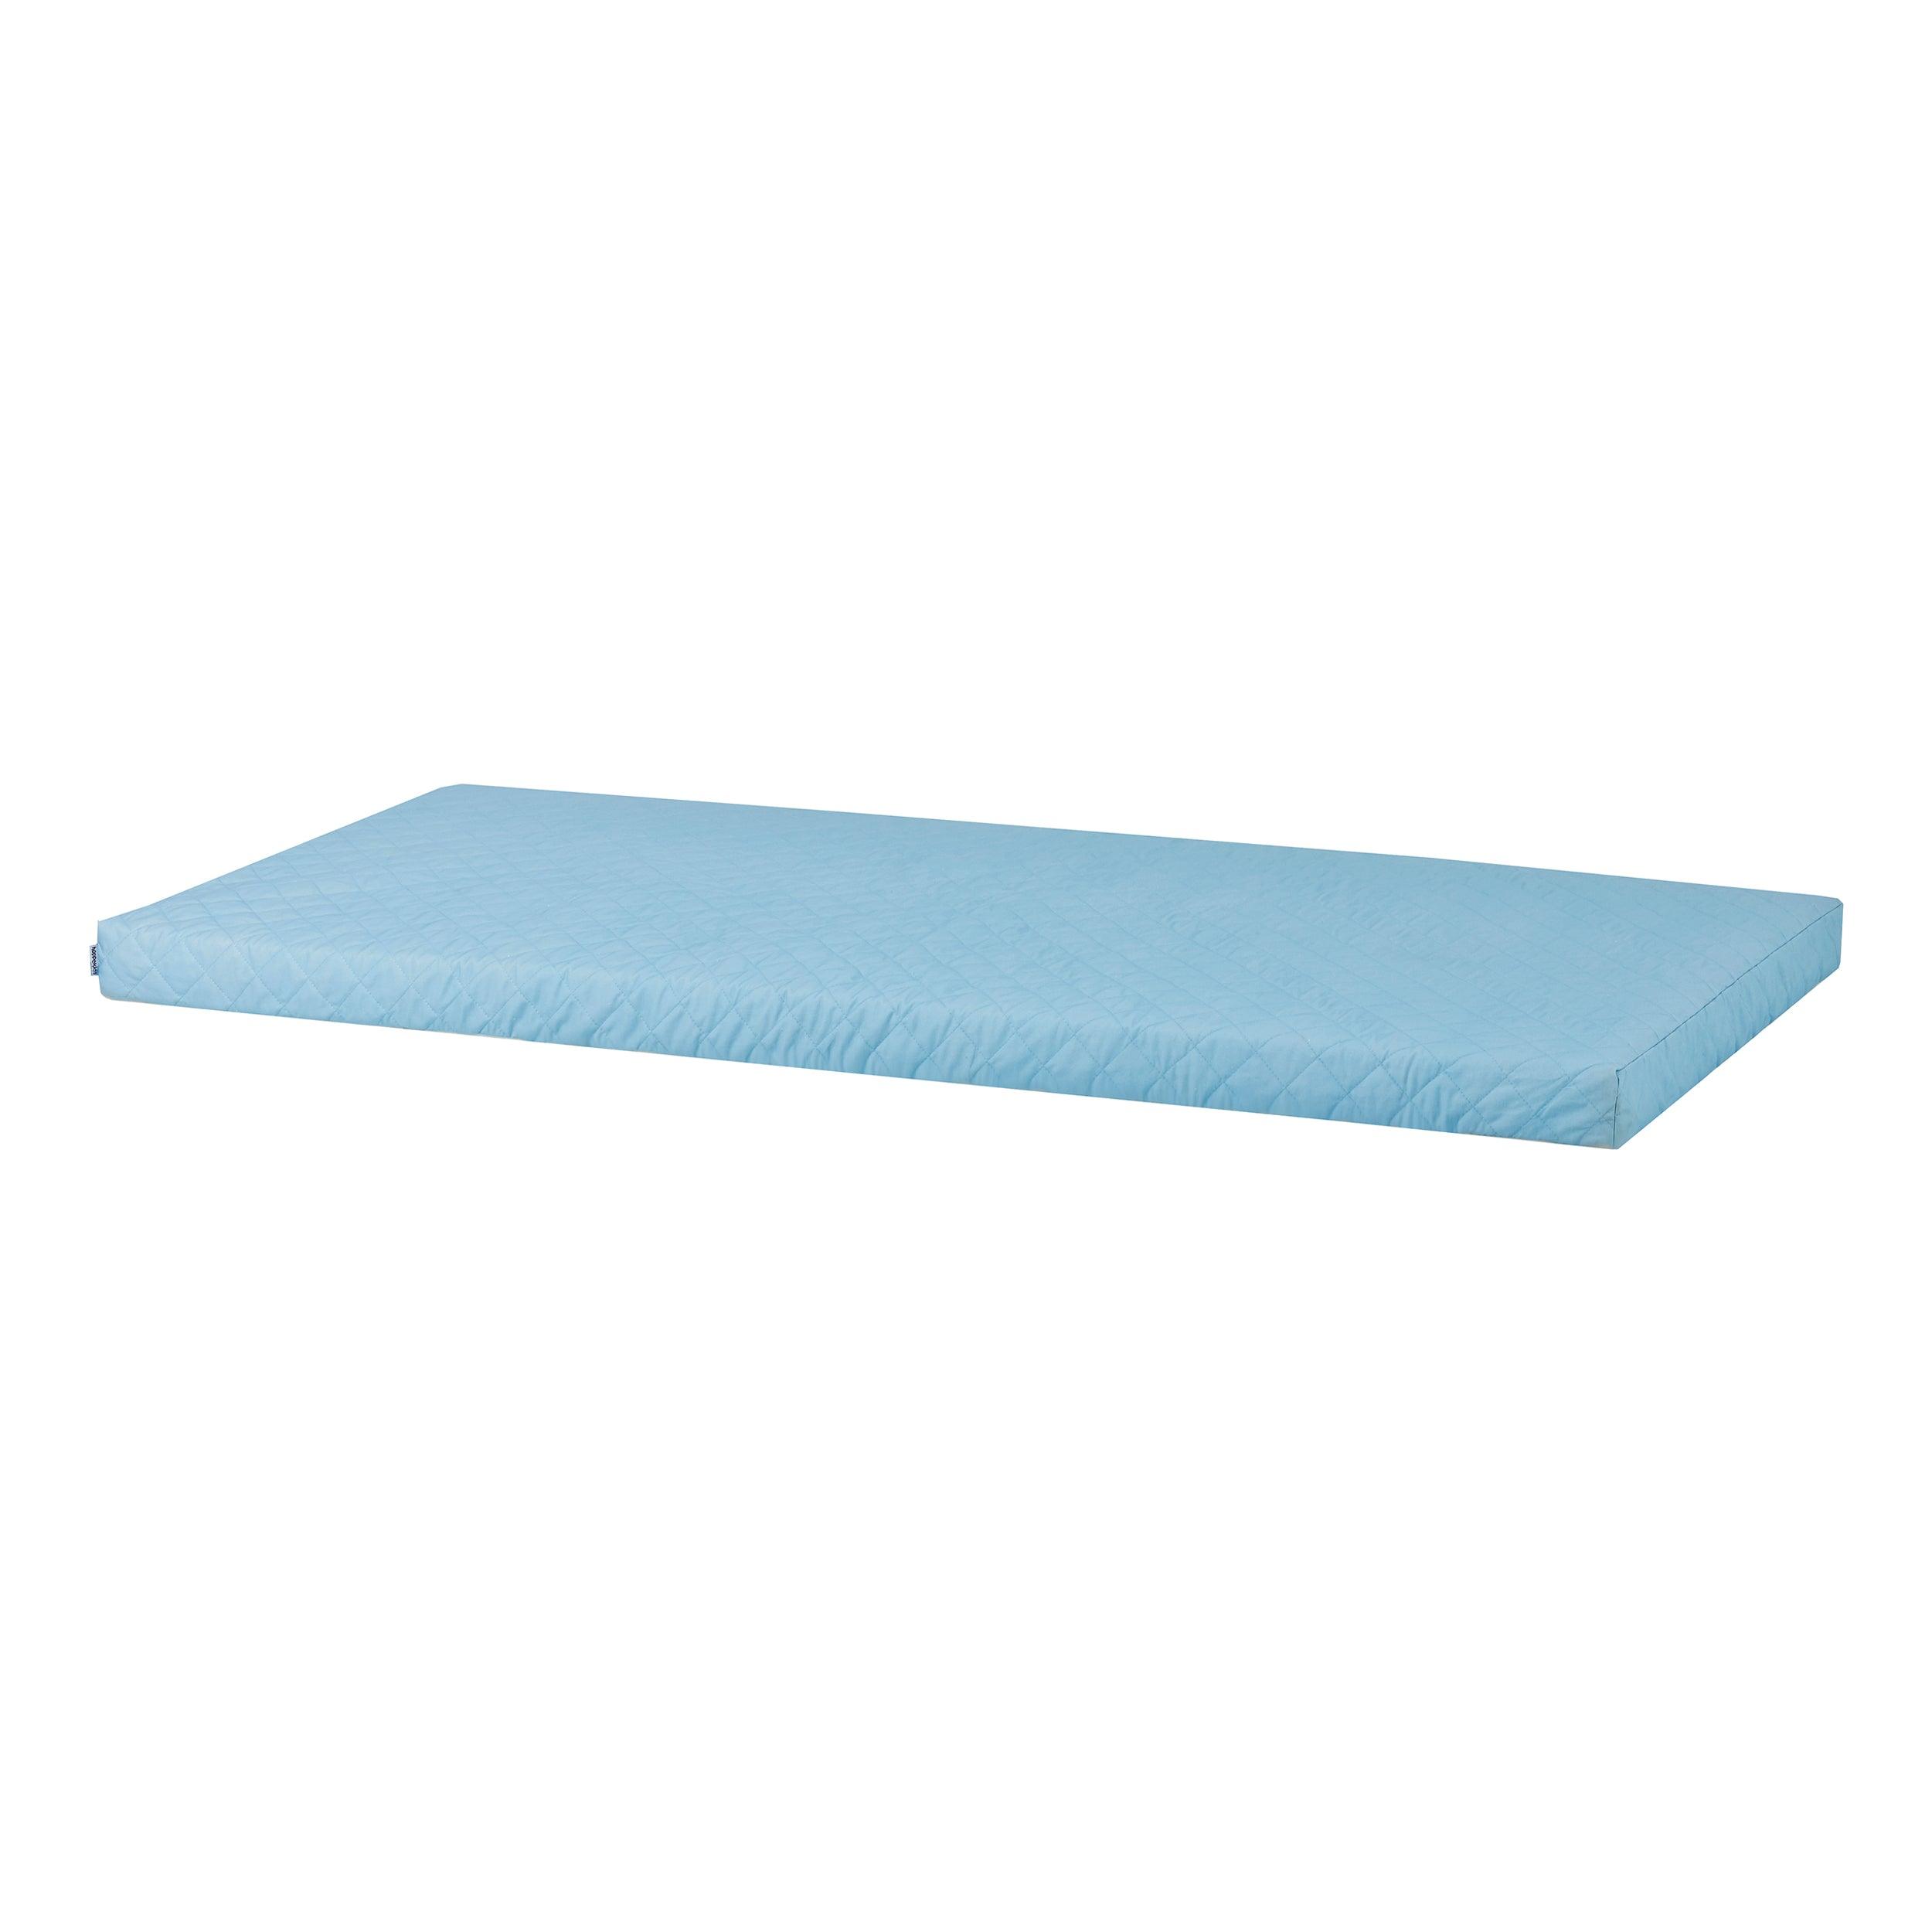 Hoppekids foam mattress including quilted cover